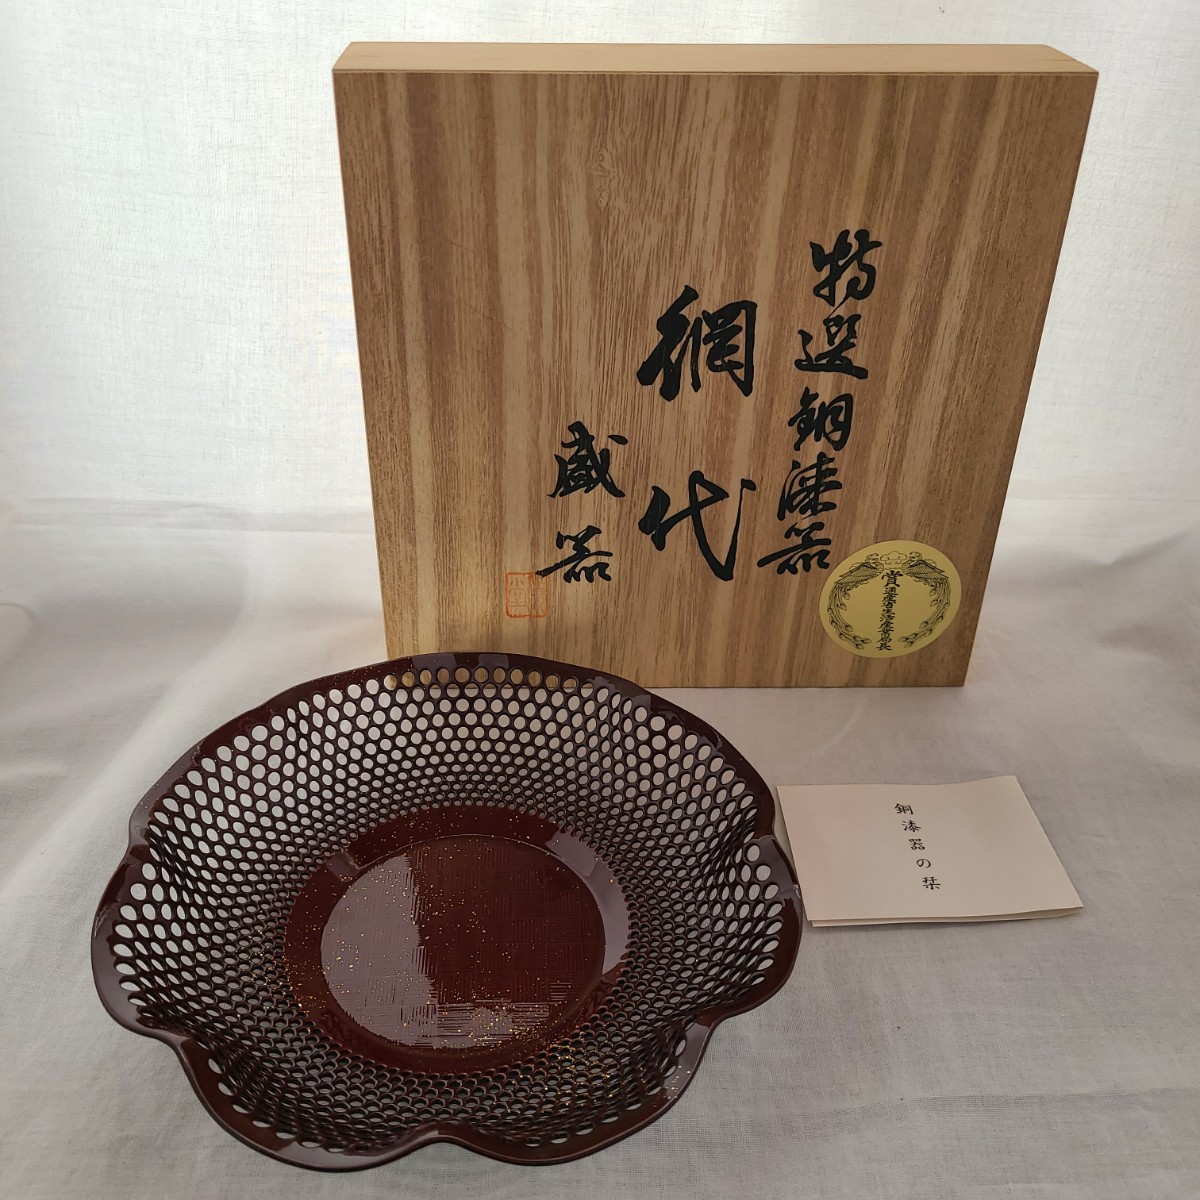 Yahoo!オークション - 1 石川県御屋敷所蔵品 特選 銅漆器 網代 盛器 純